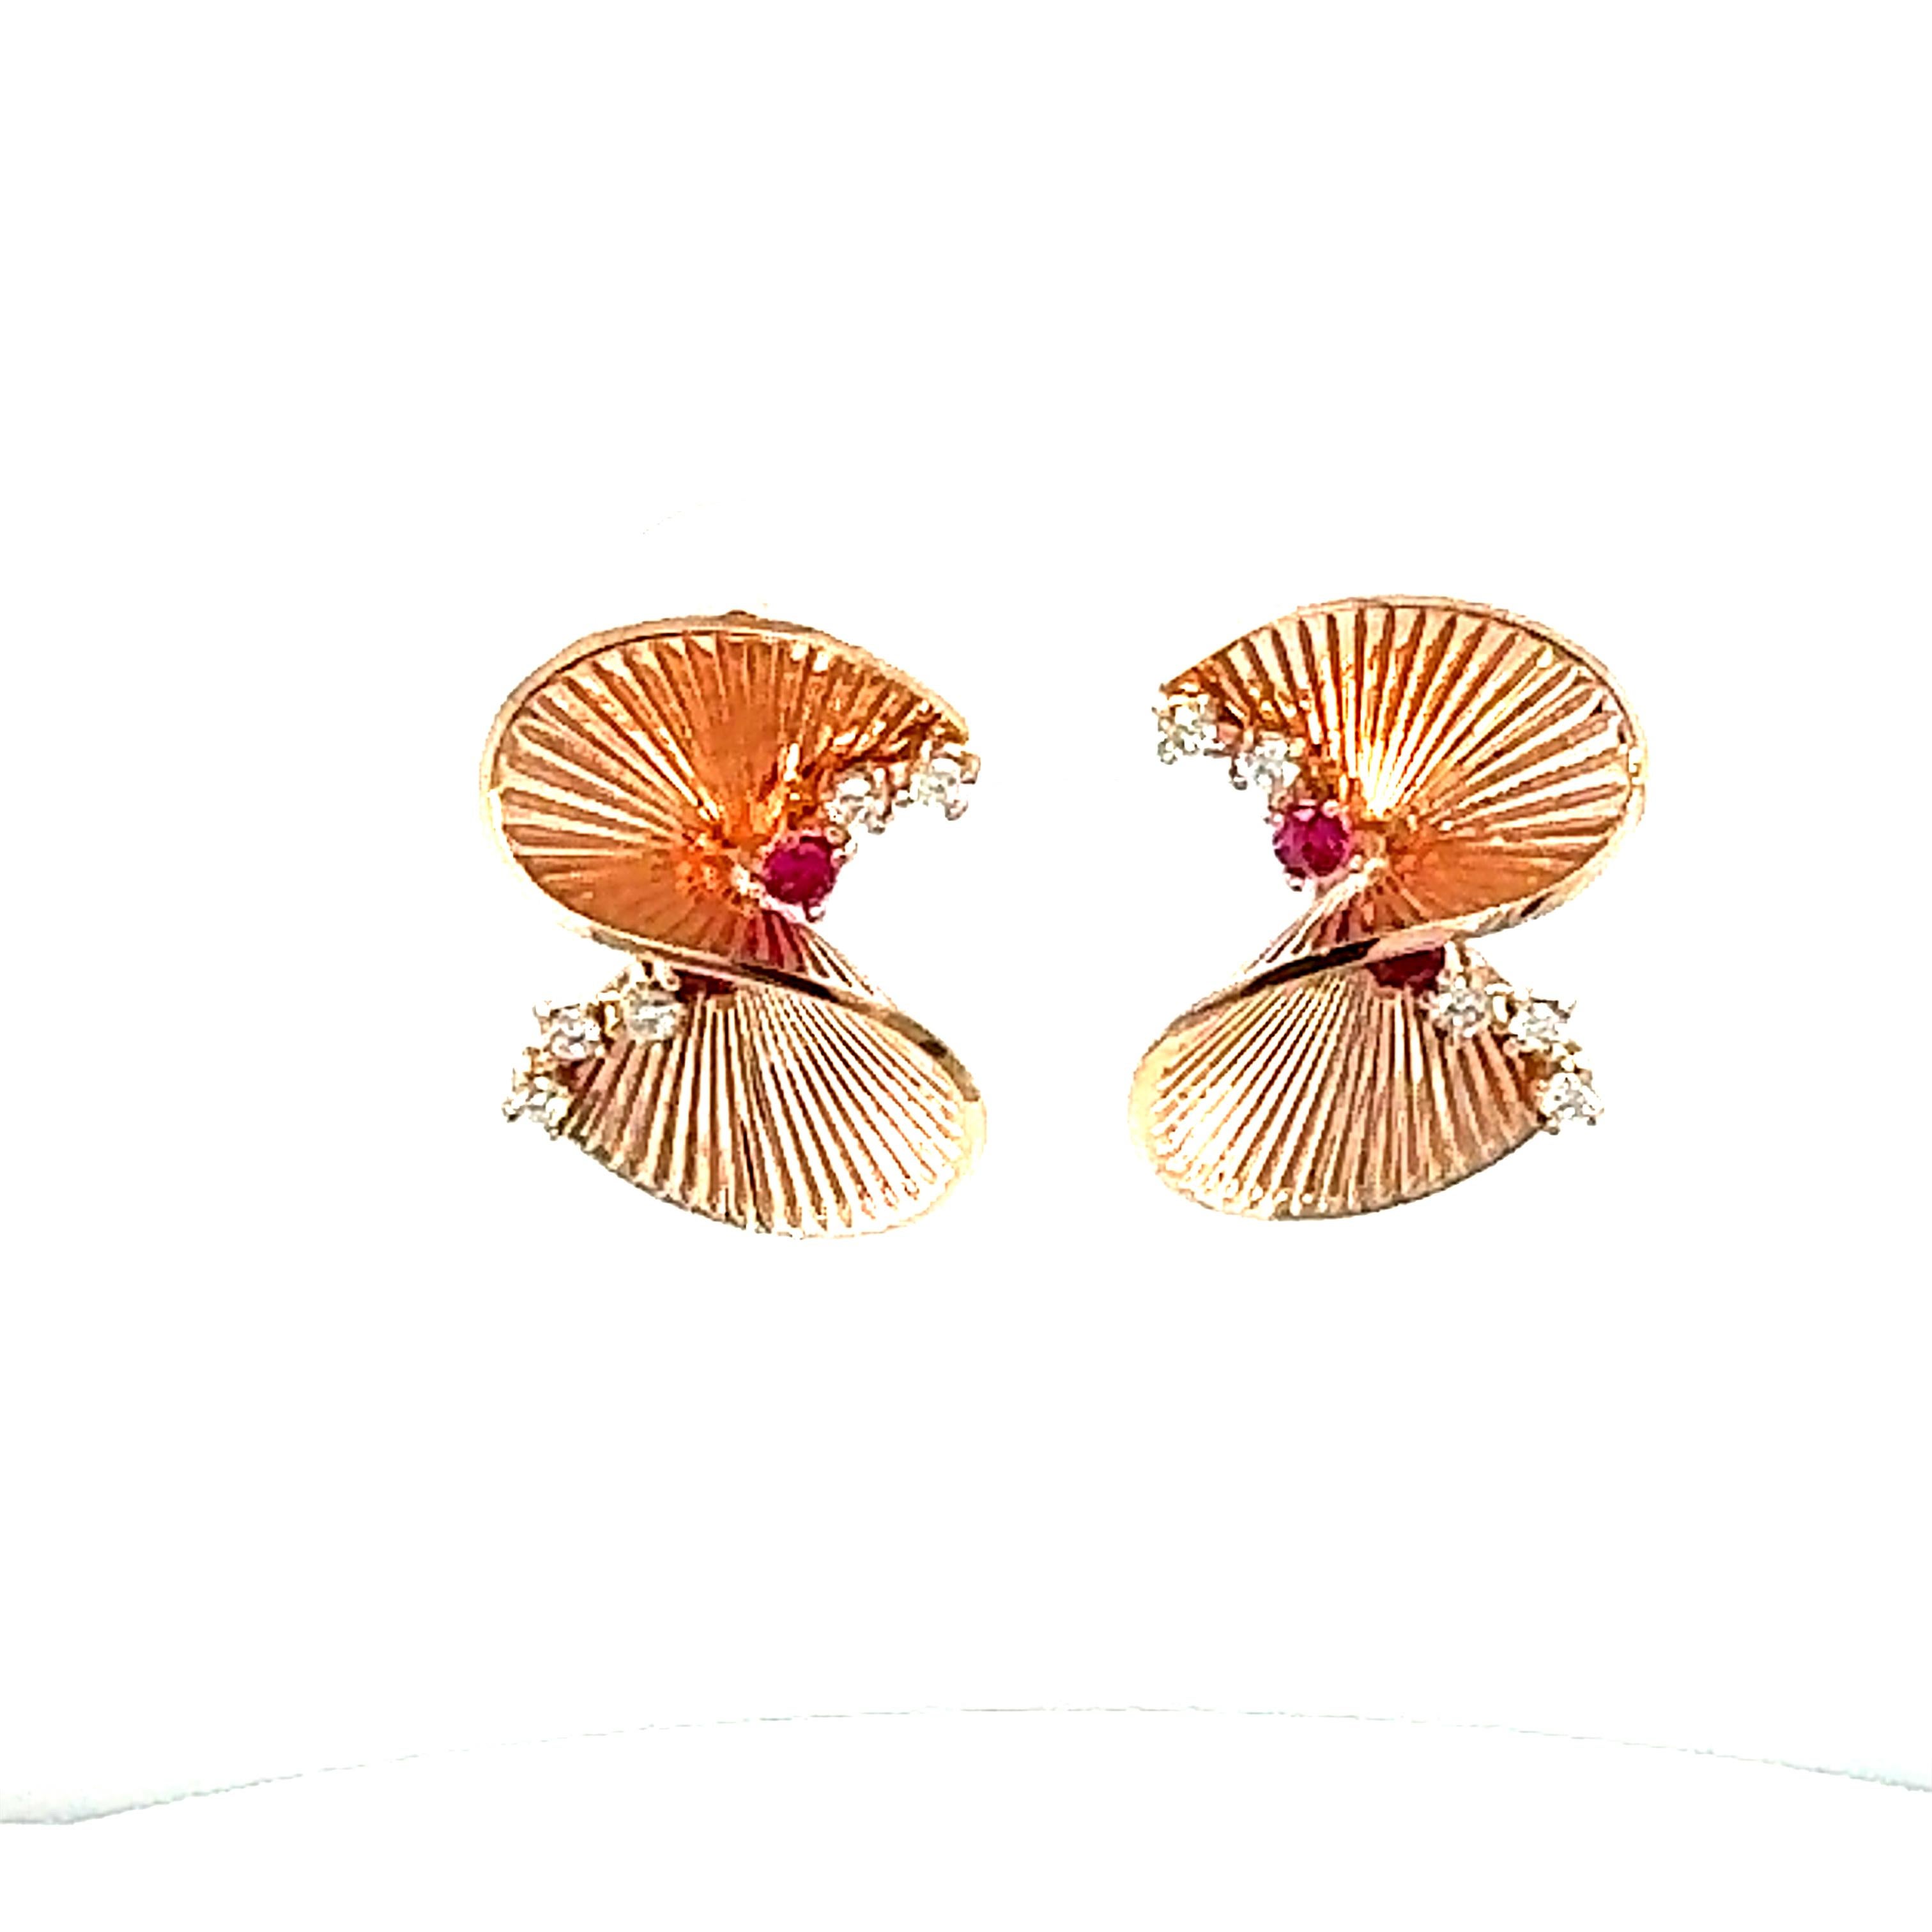 Boucles d'oreilles Art Déco en or rose avec diamant de 0,34 carat

Ces boucles d'oreilles délicates et complexes s'harmoniseront parfaitement avec la garde-robe de chacun ! Ces boucles d'oreilles sont inspirées de l'ère Art-Déco. 
Les boucles